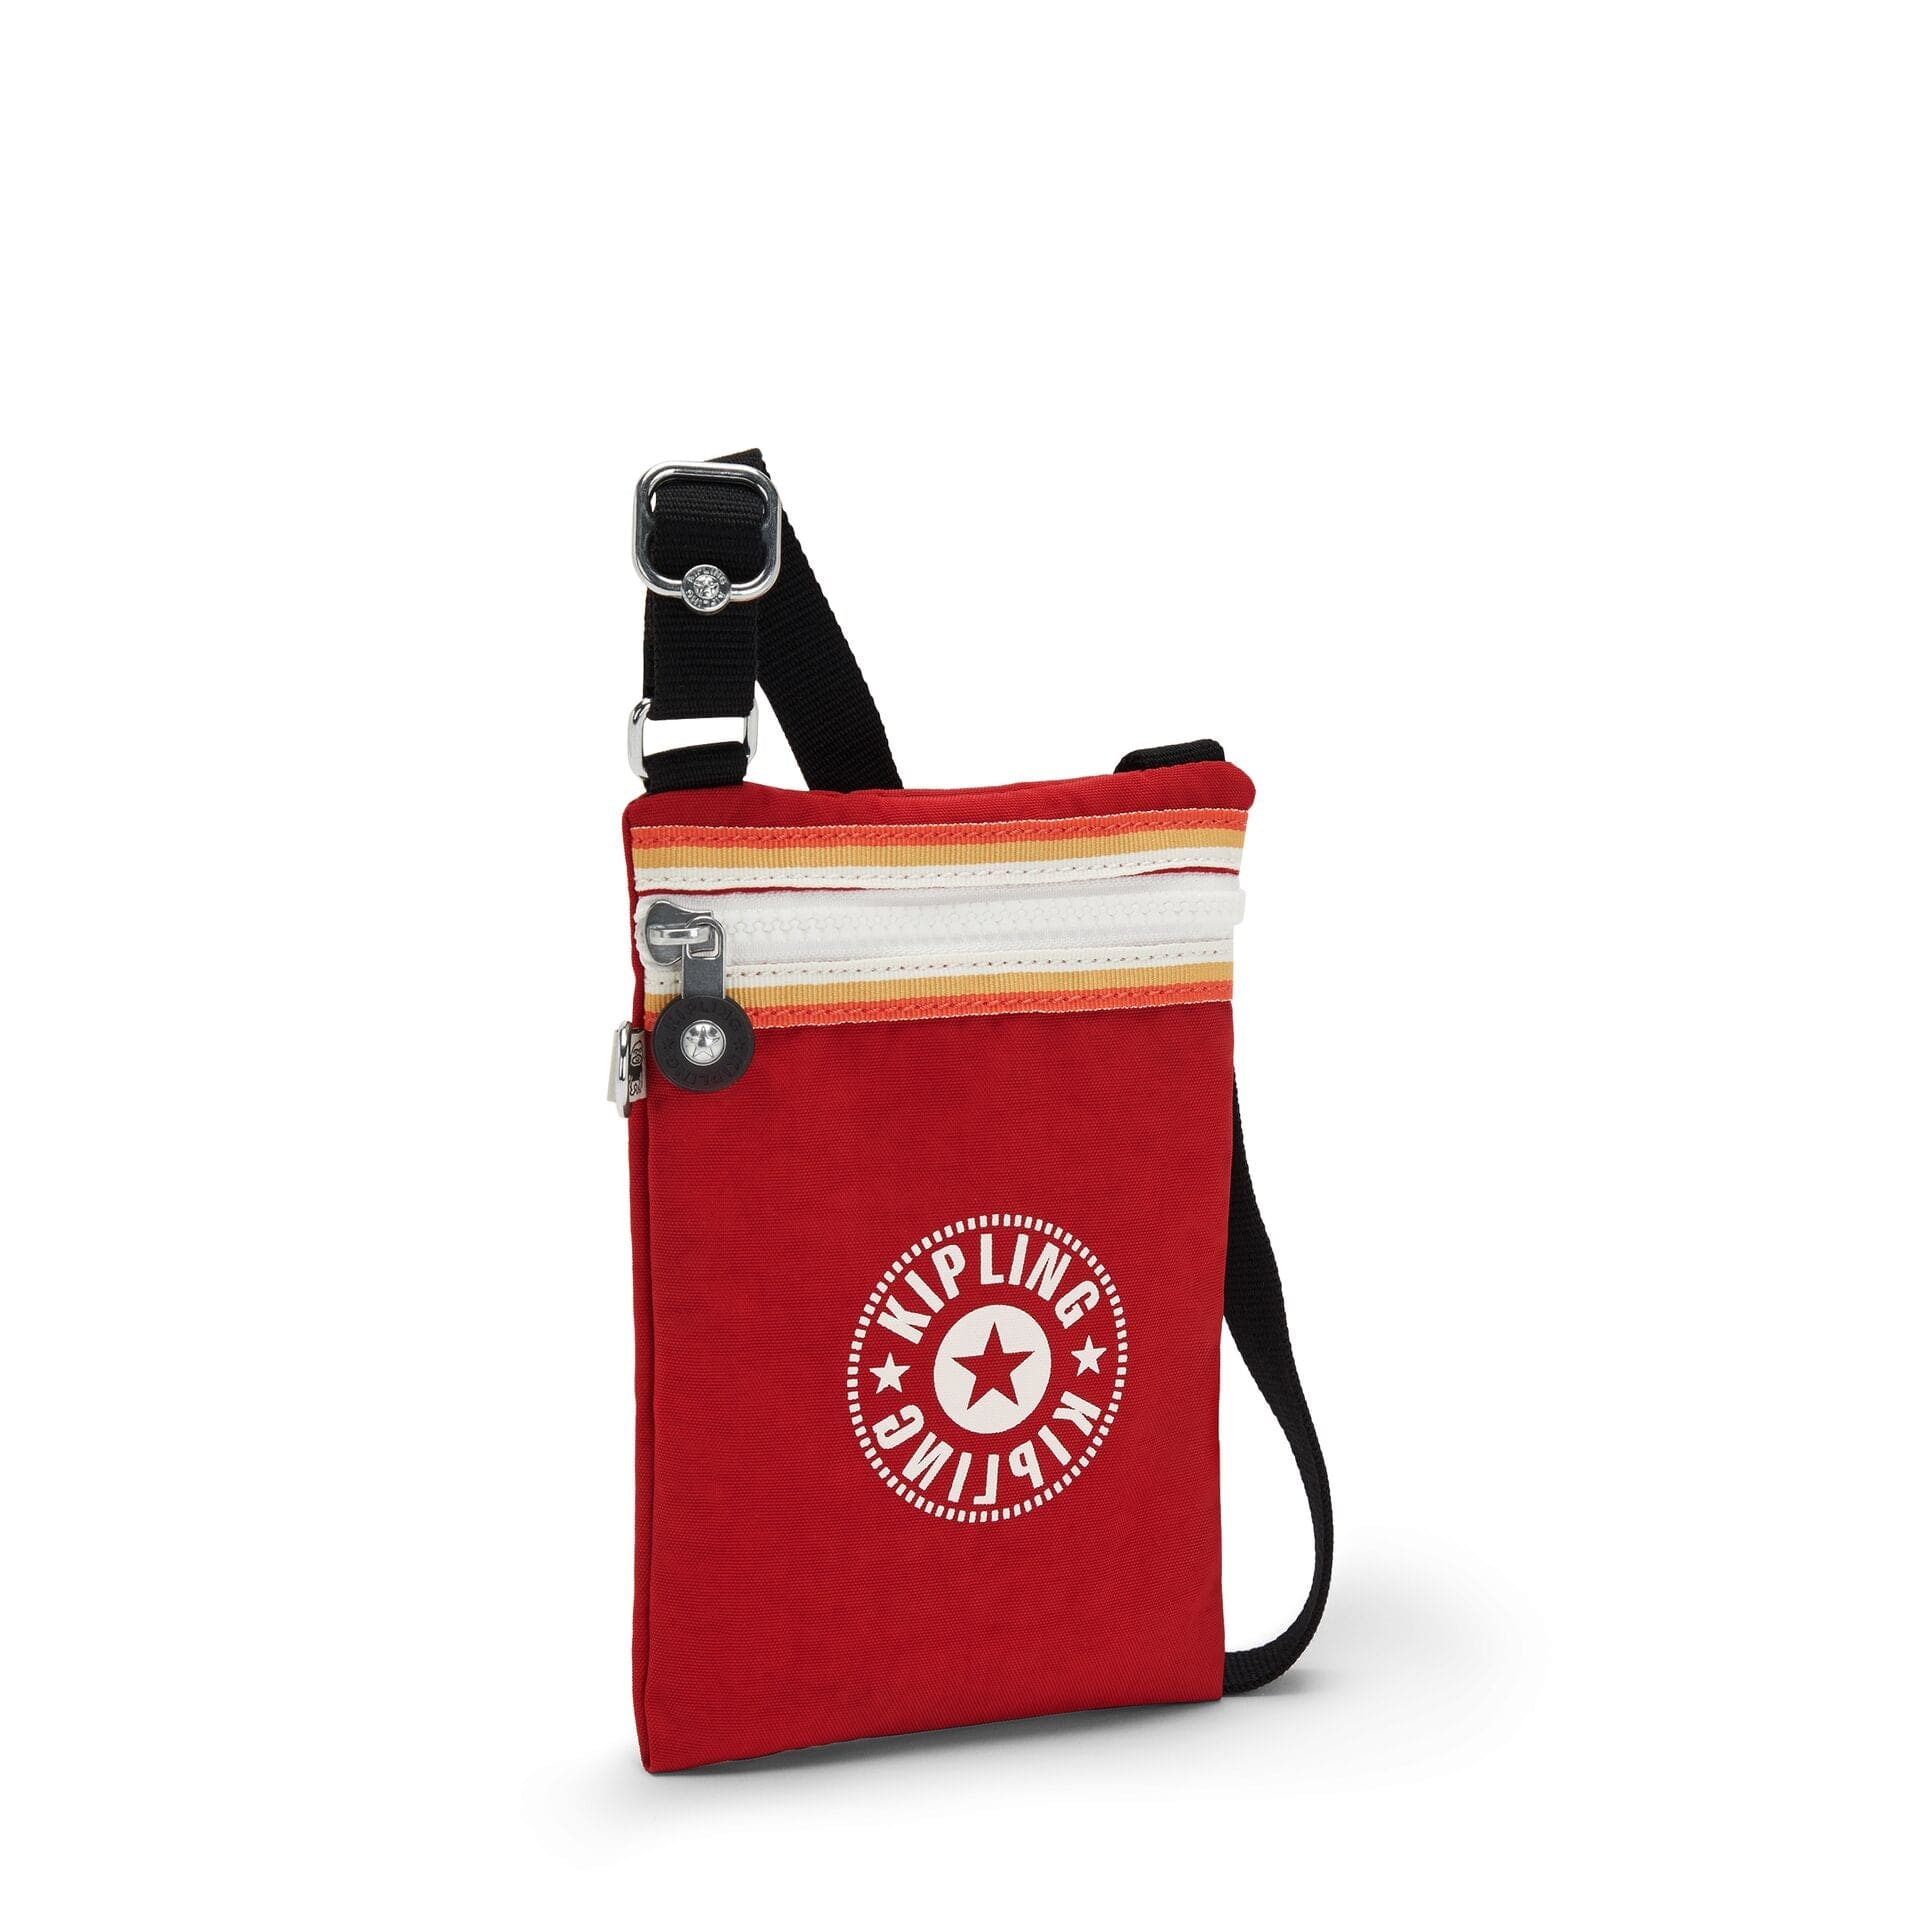 KIPLING-AFIA LITE-Phone bag-Red Rouge C-I6650-82U